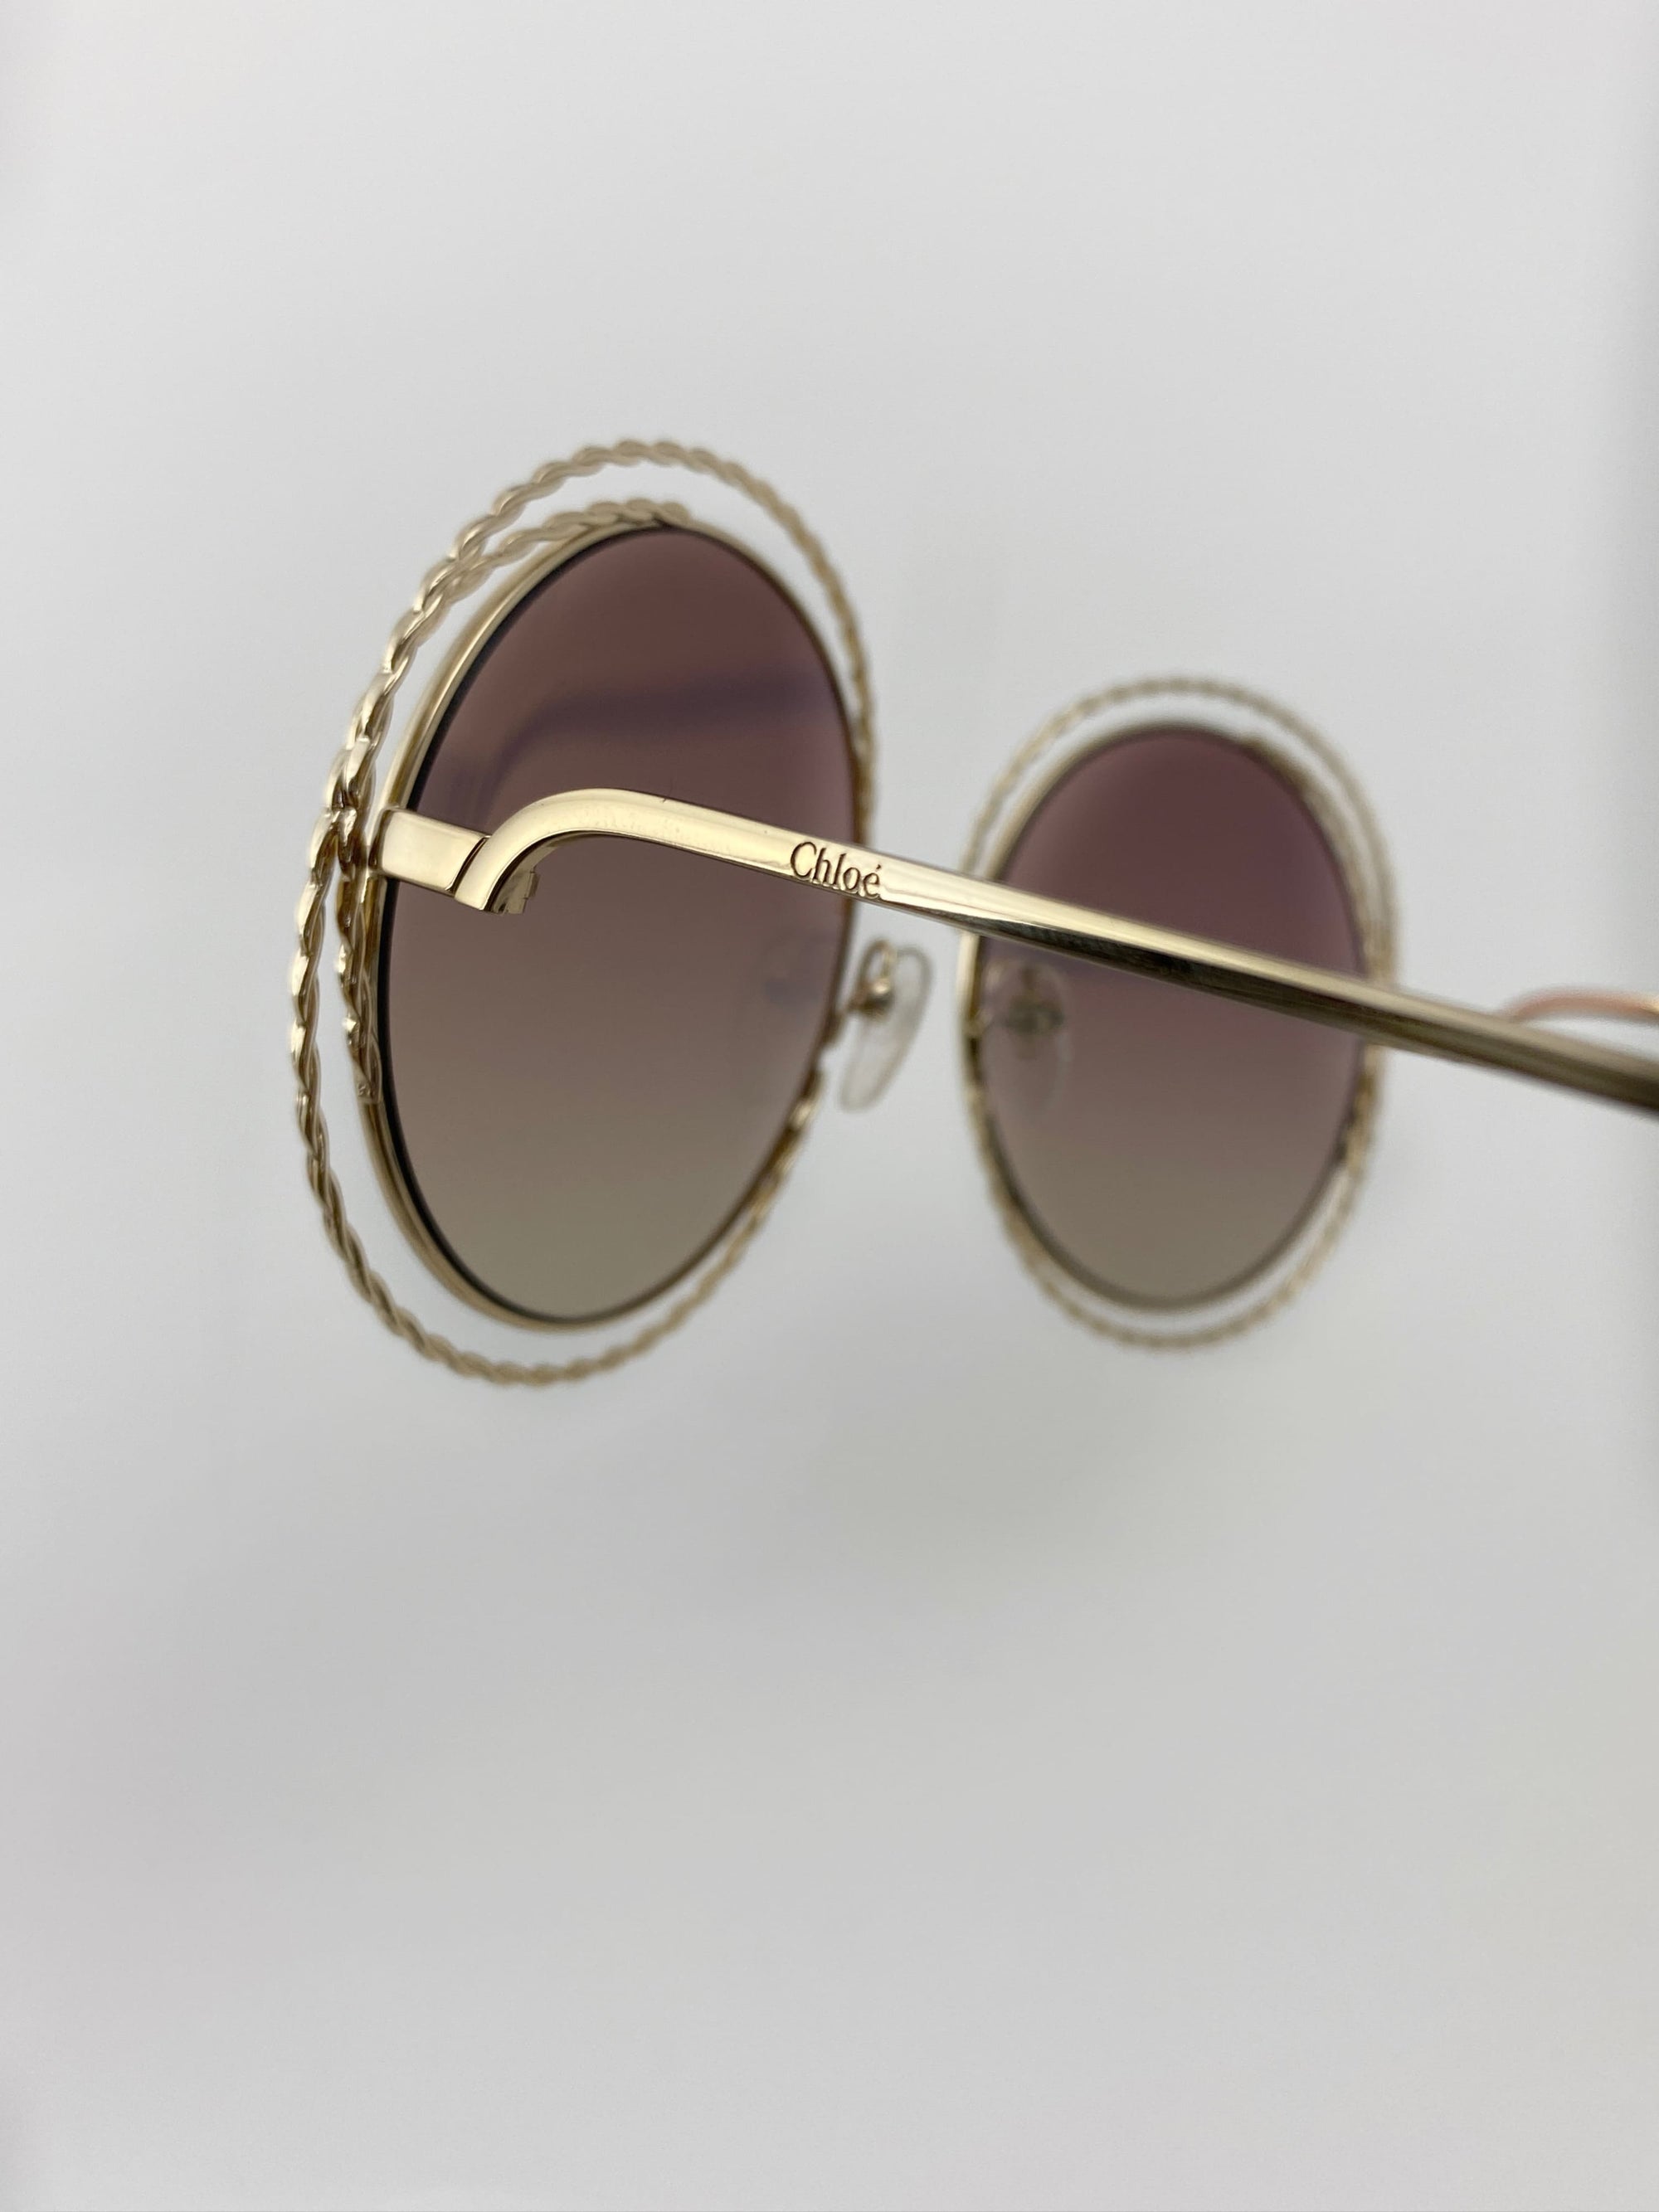 Produktbild der Chloé Sunglasses Nickel gold chains CE114ST 810 von Bügel von der Seite.